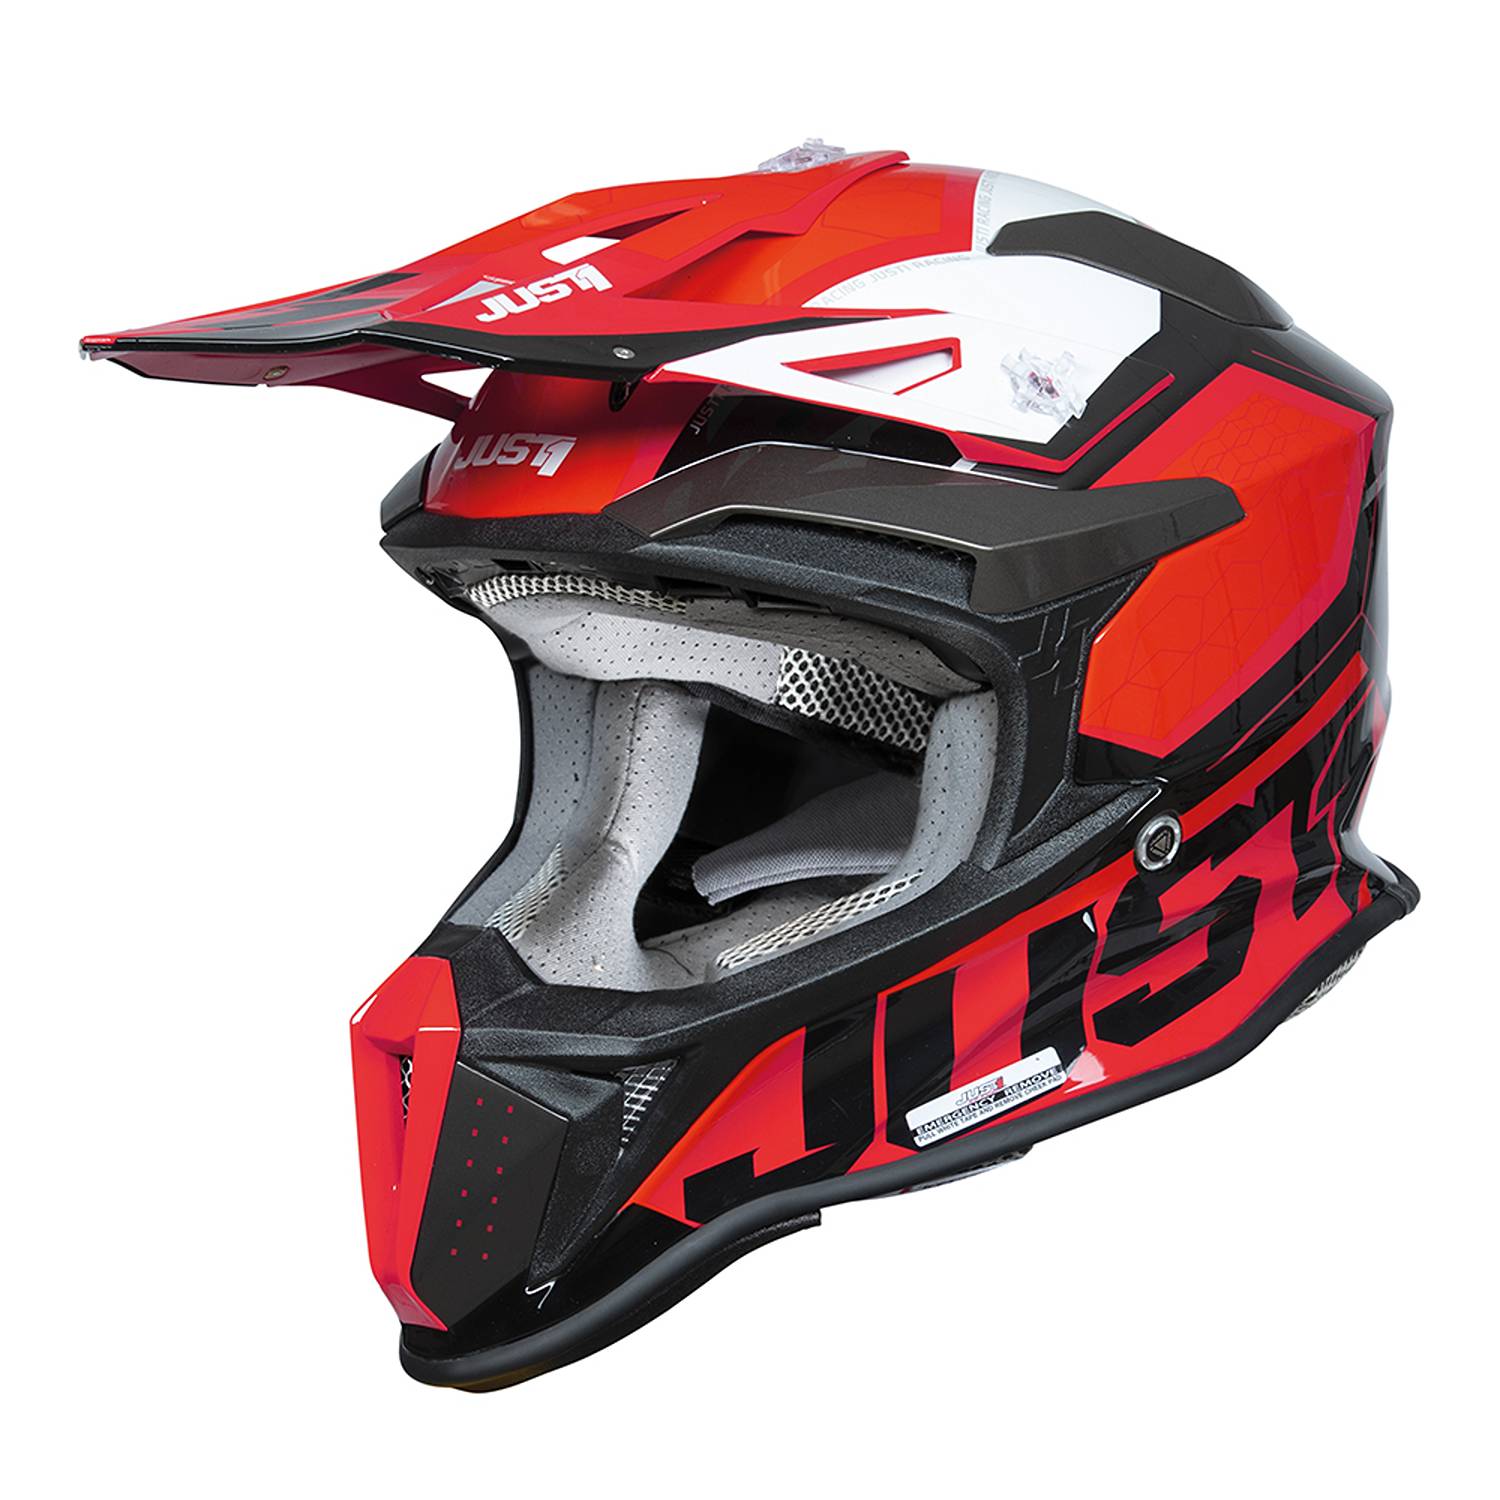 Image of Just1 J18-F Hexa Red White Black Matt Offroad Helmet Size XL ID 8055774027243